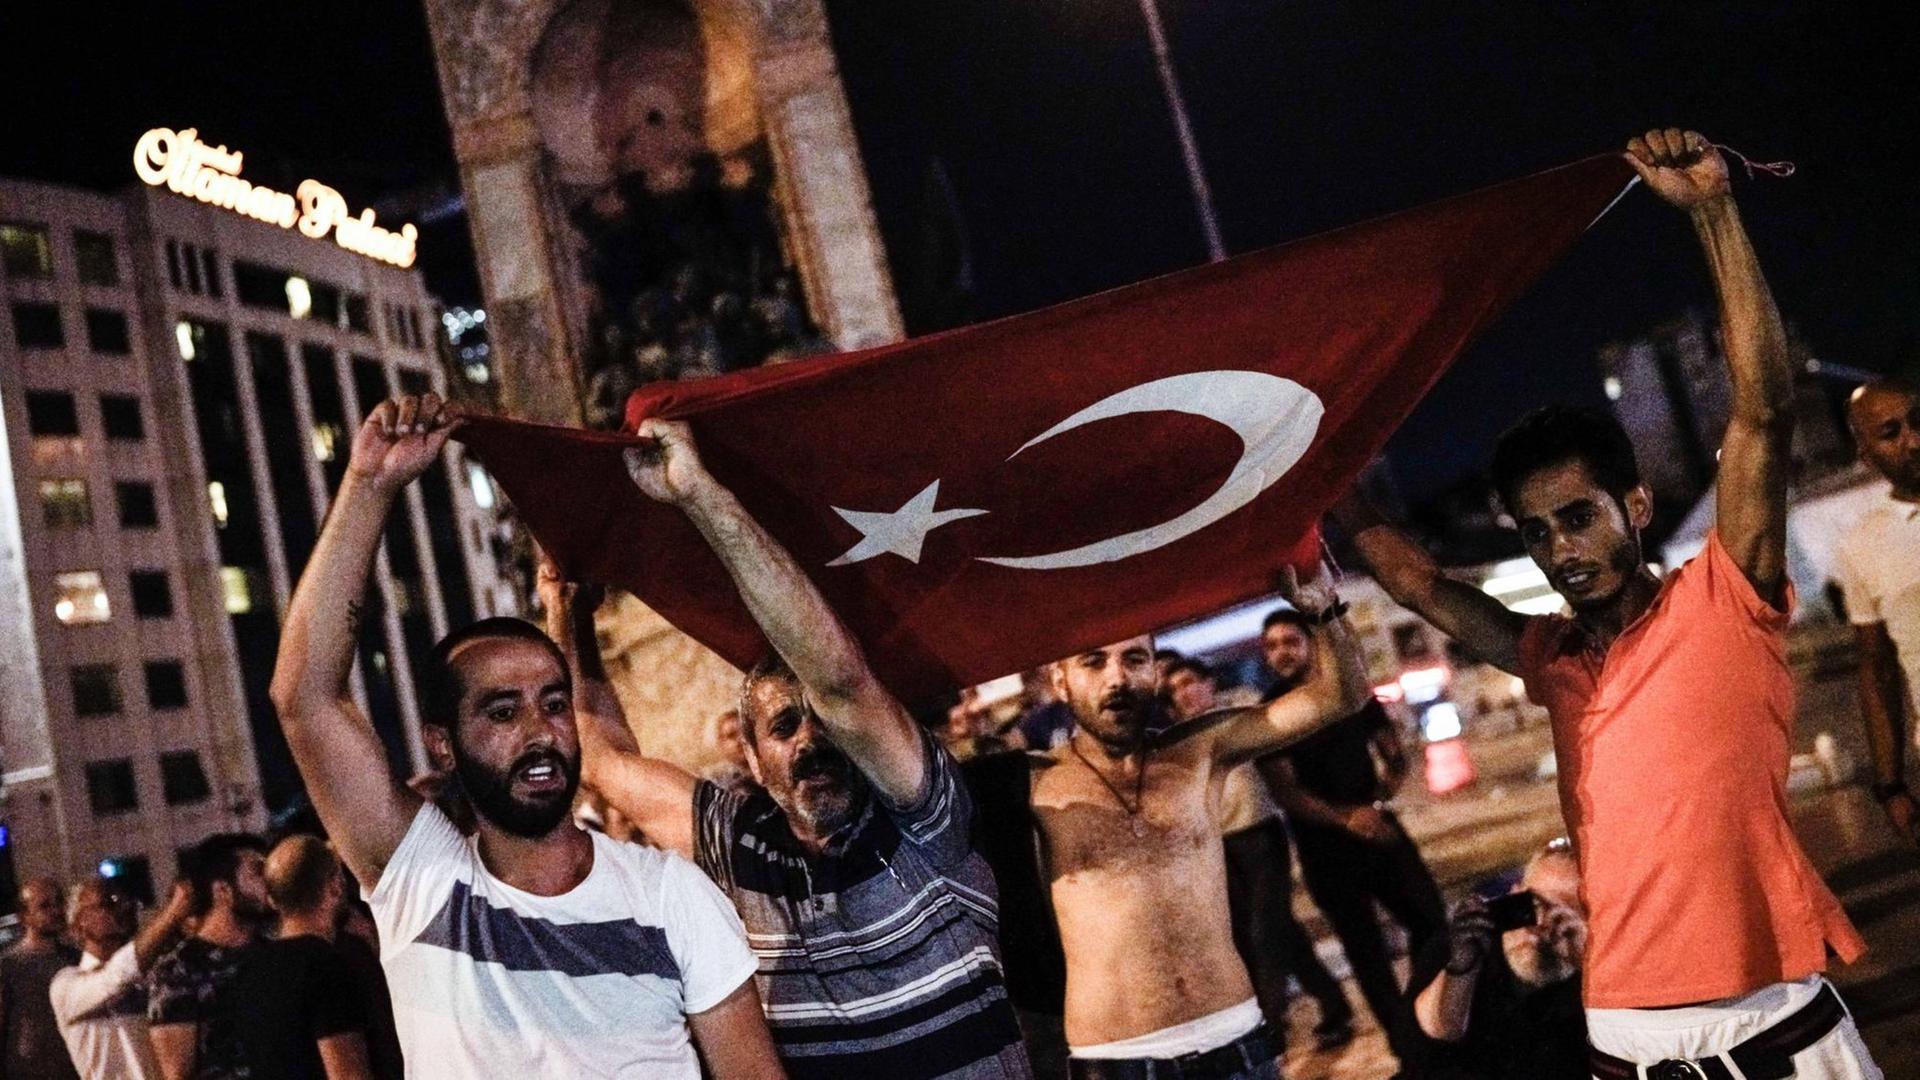 Männer tragen eine türkische Flagge auf dem Taksimplatz in Istanbul.